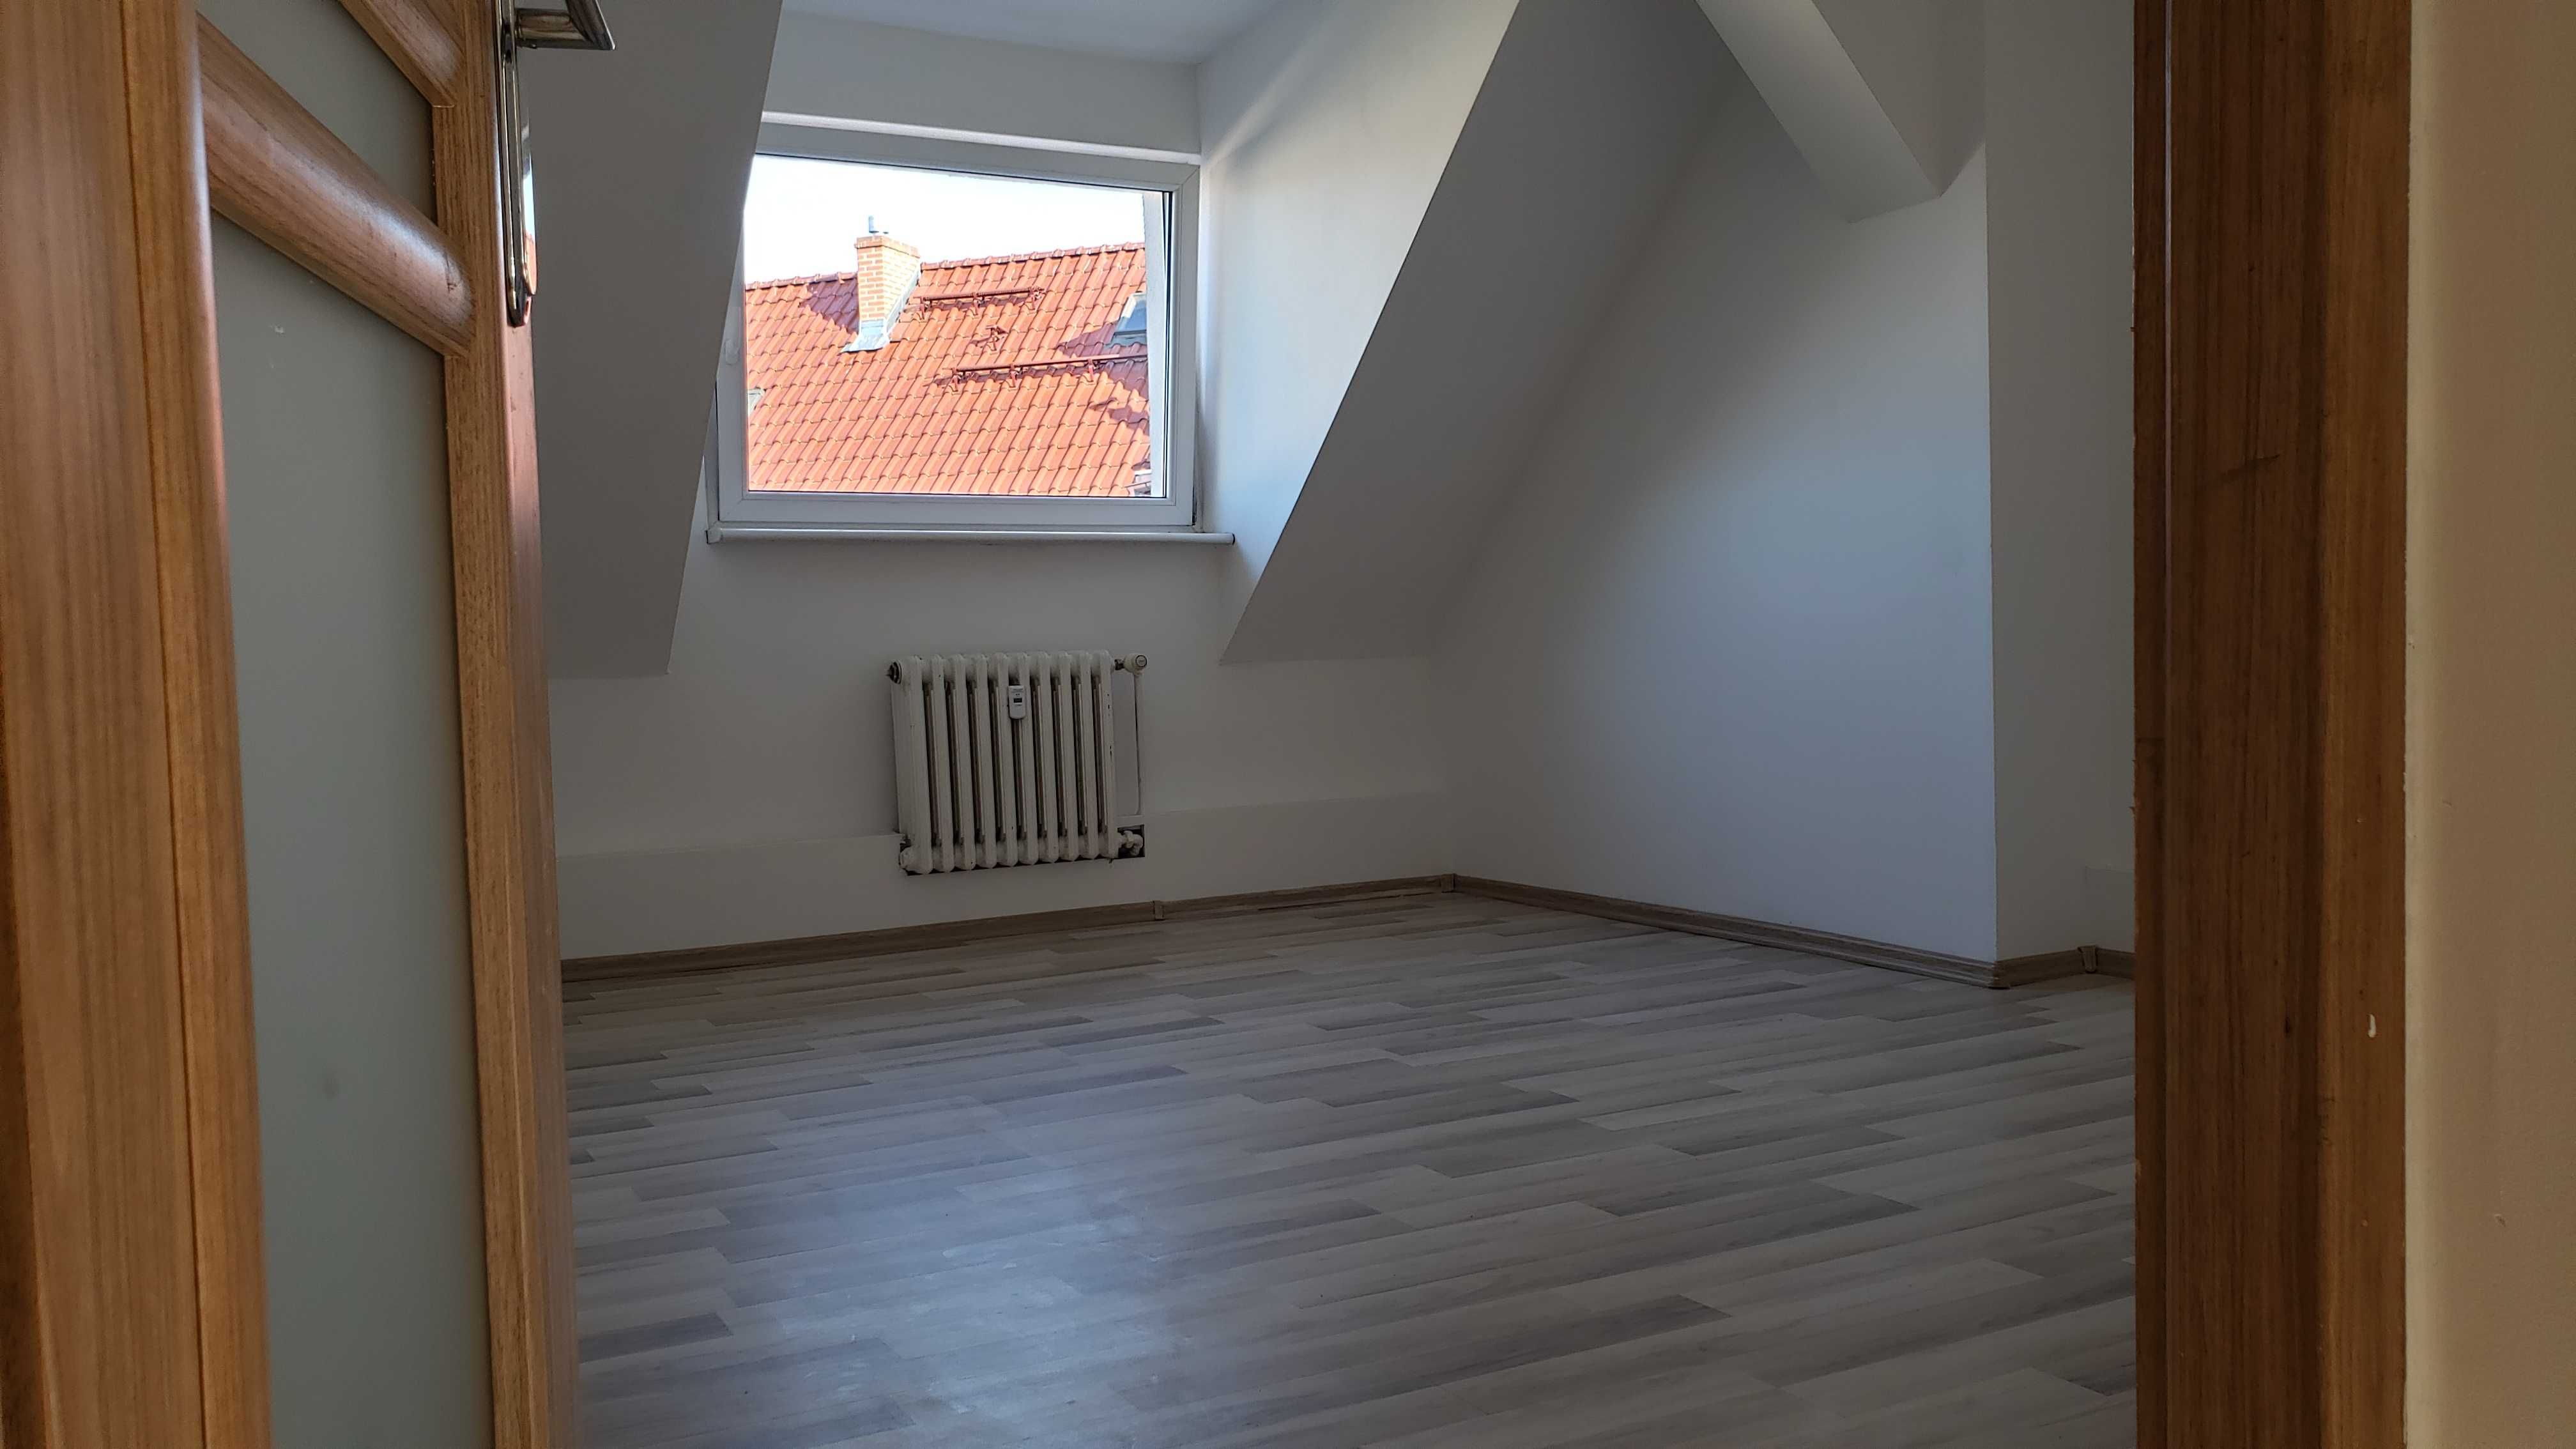 Szczecin mieszkanie 81 m2 3 pokoje + 50 m2 drugi poziom do adaptacji